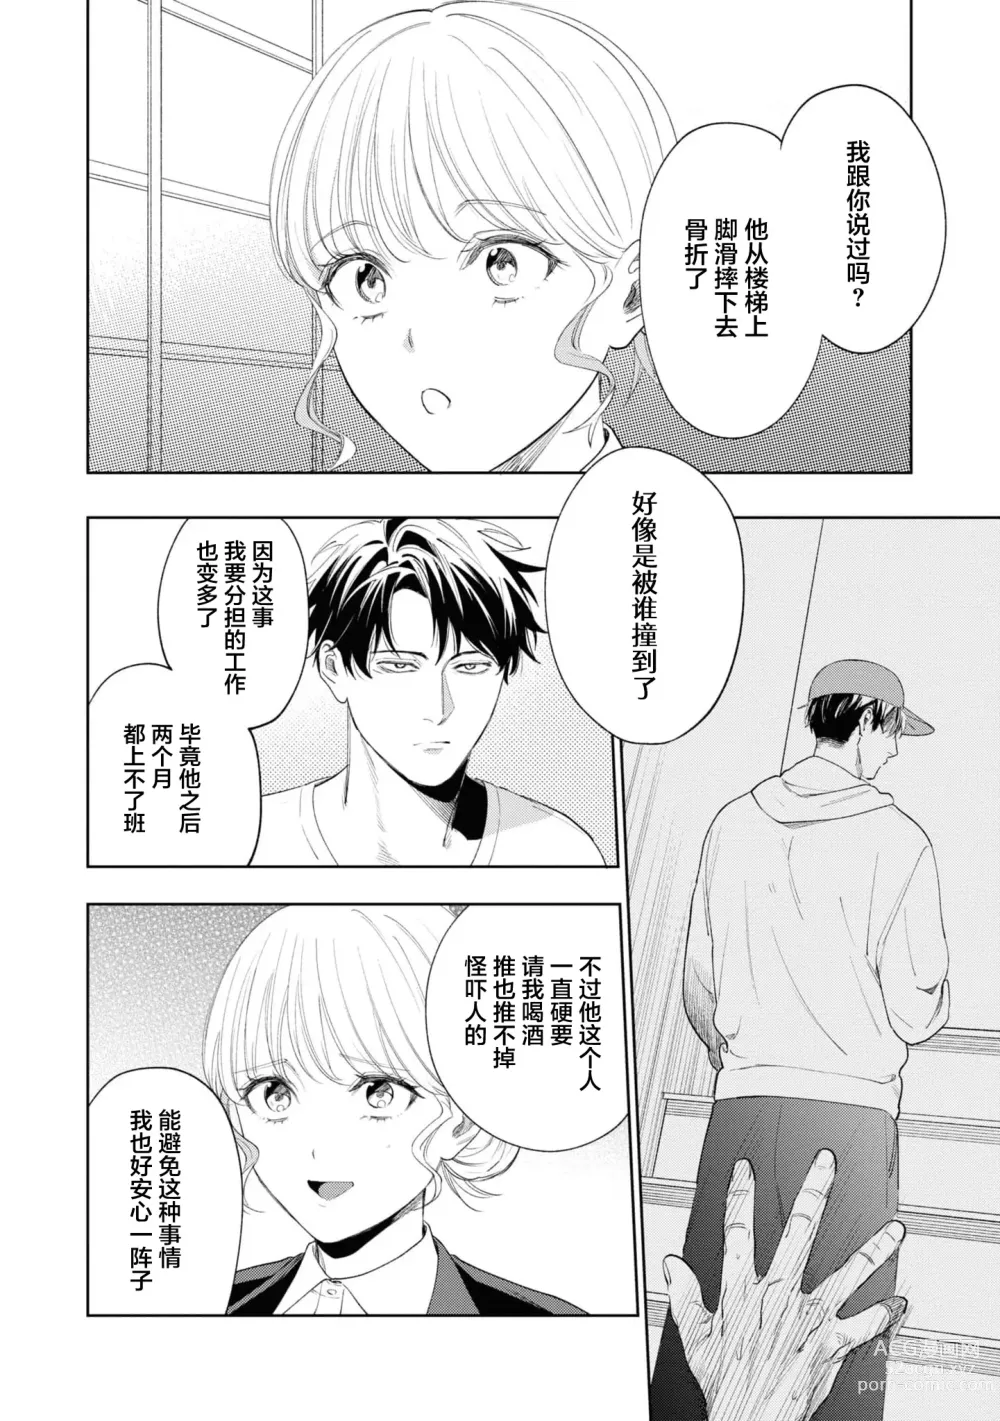 Page 7 of manga 暖男四宫不为人知的～堕入年下男友设下的陷阱进行满溢爱意的交合～